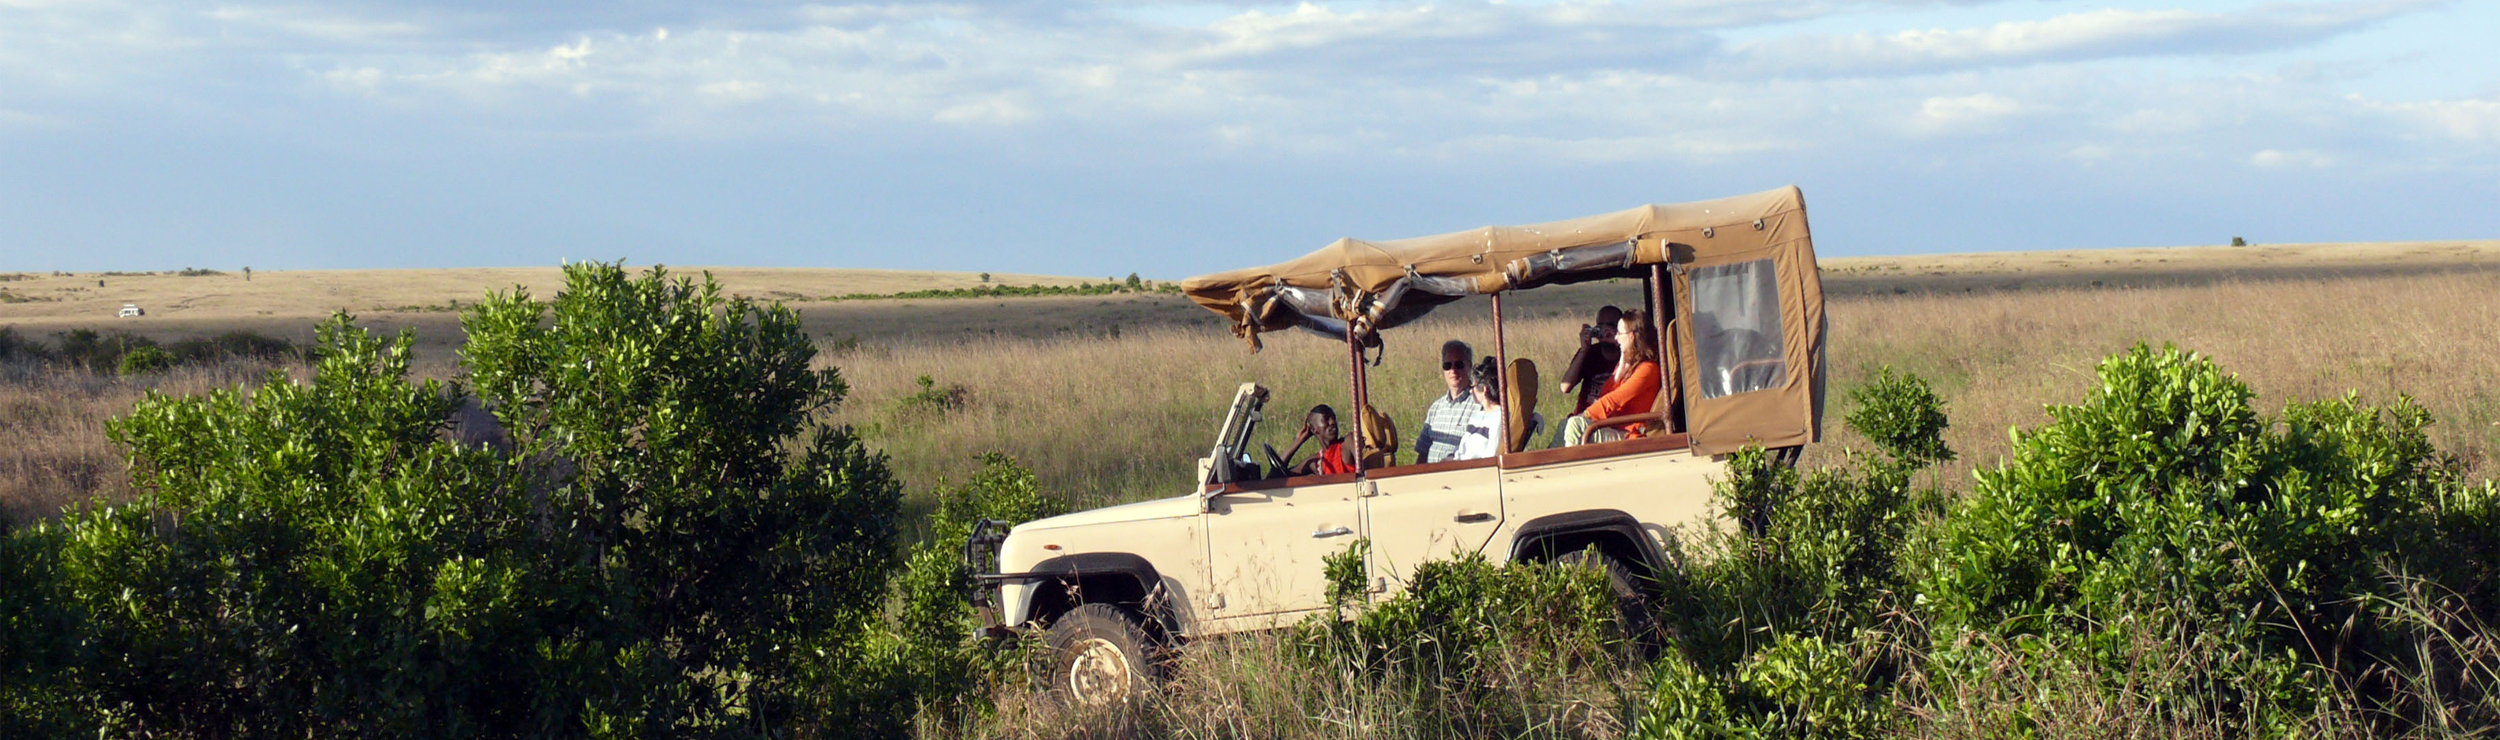 Kisima Tours & Safaris Kenia.